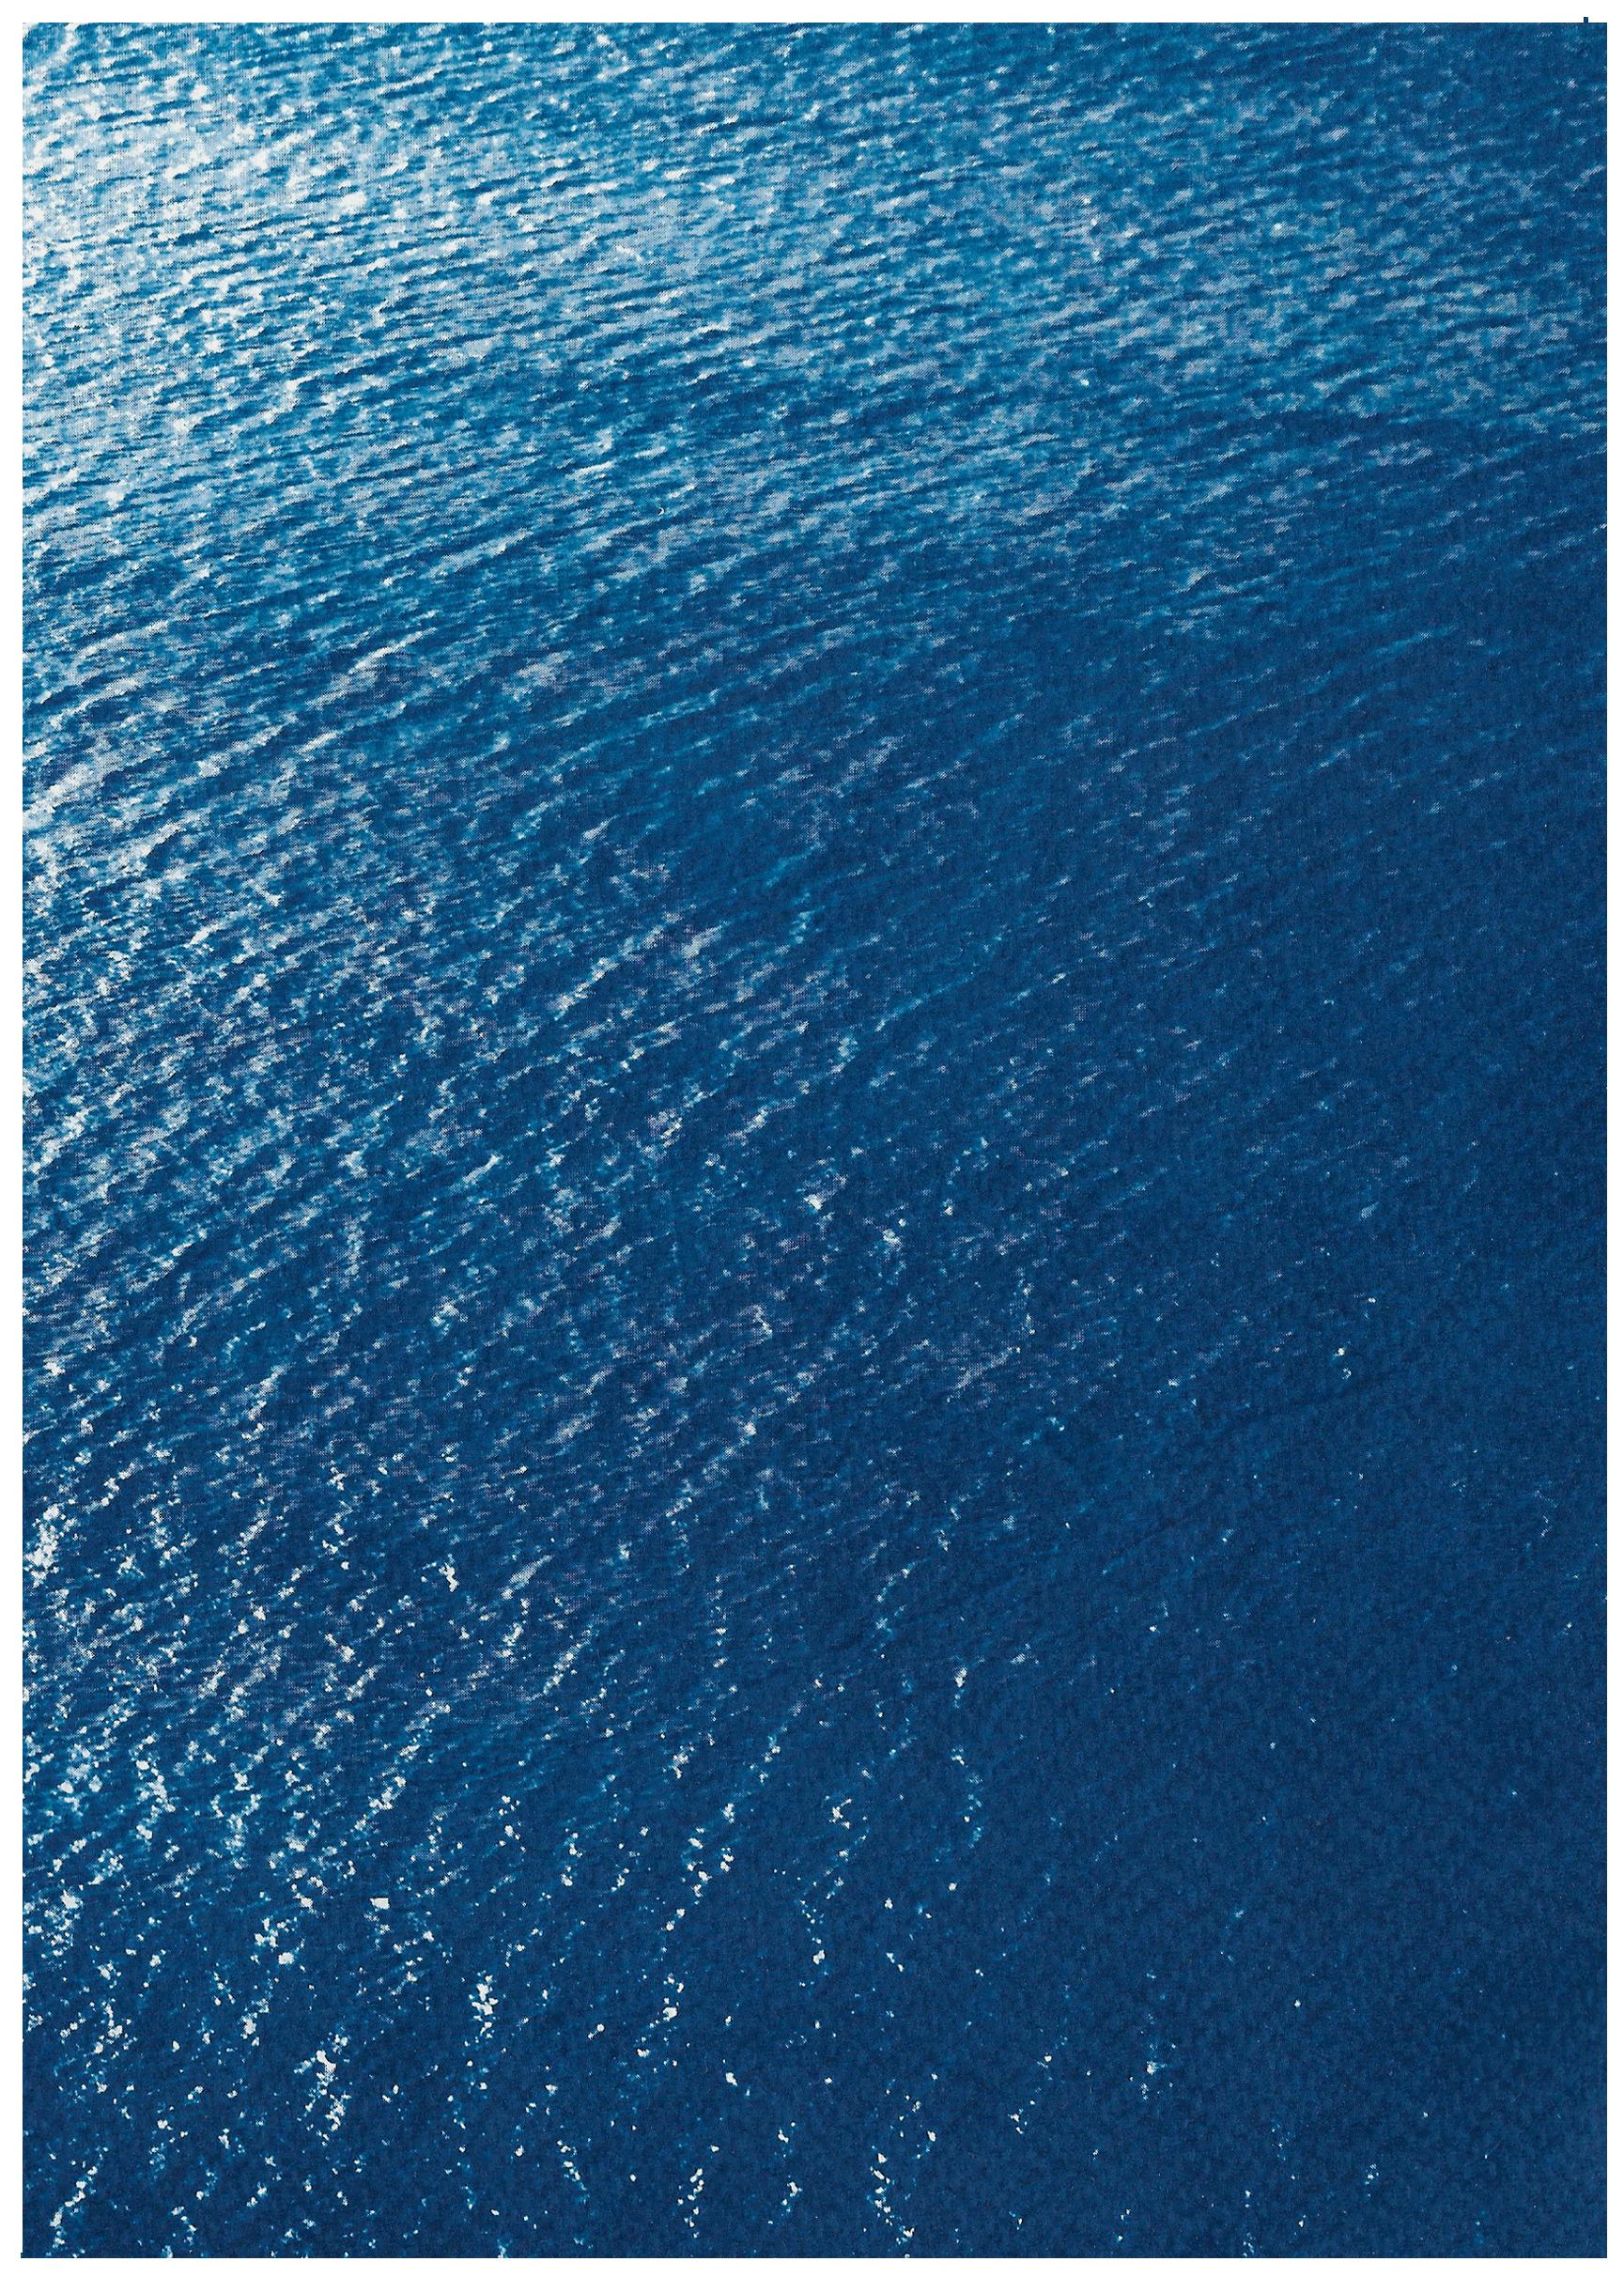 Il s'agit d'un cyanotype exclusif imprimé à la main en édition limitée.

Détails :
+ Titre : Smooth Bay en Méditerranée
+ Année : 2023
+ Taille de l'édition : 20
+ Tampon et certificat d'authenticité fournis.
+ Mesures : 100x140 cm (40 x 55 in.)